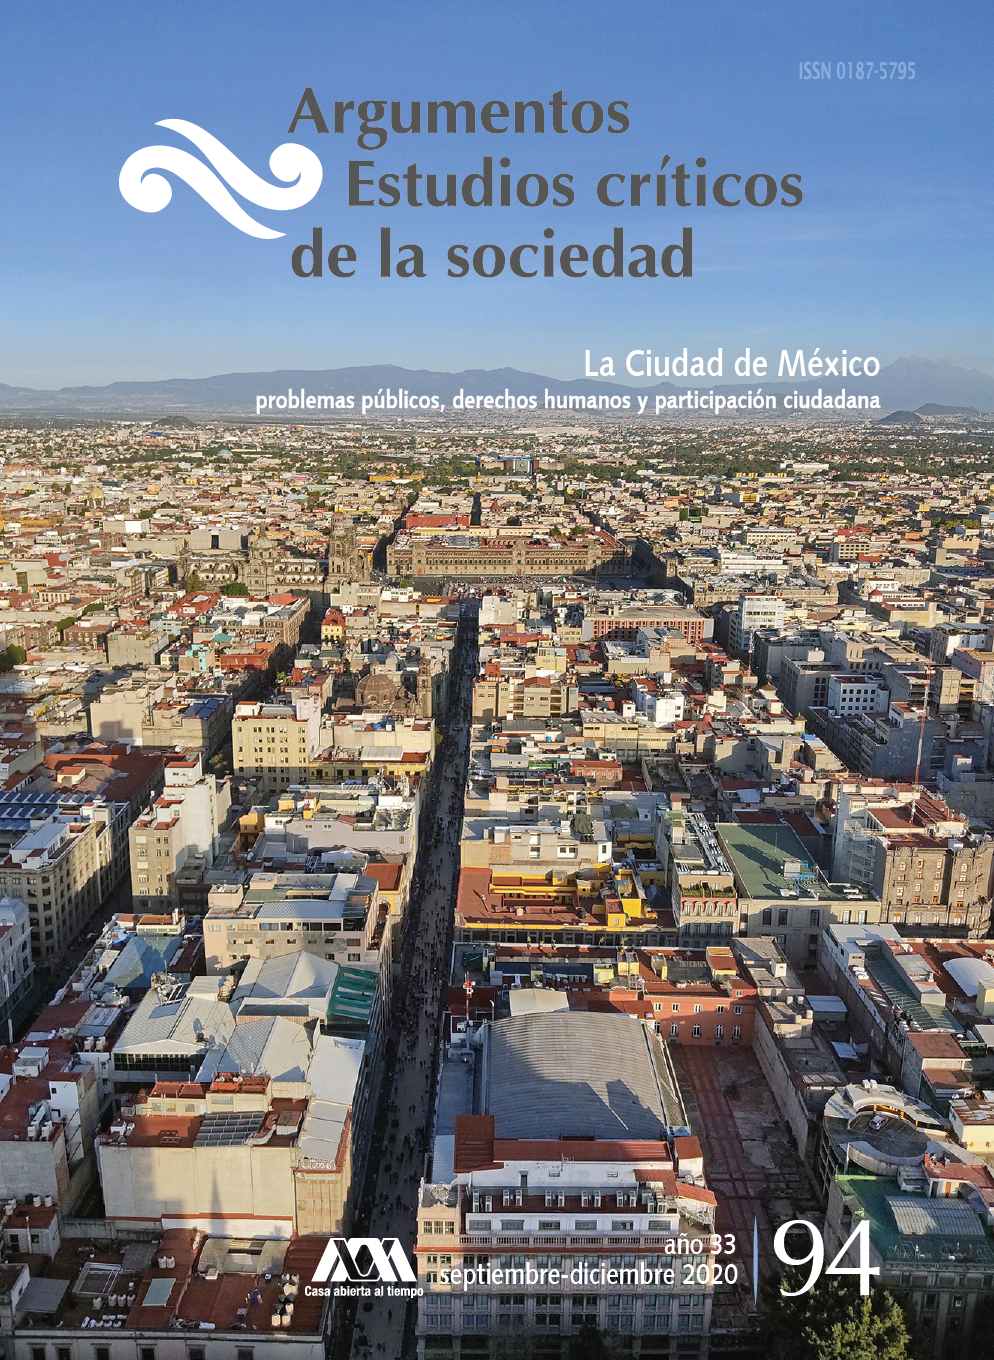 					View Núm. 94: "La Ciudad de México, problemas públicos, derechos humanos y participación ciudadana"
				